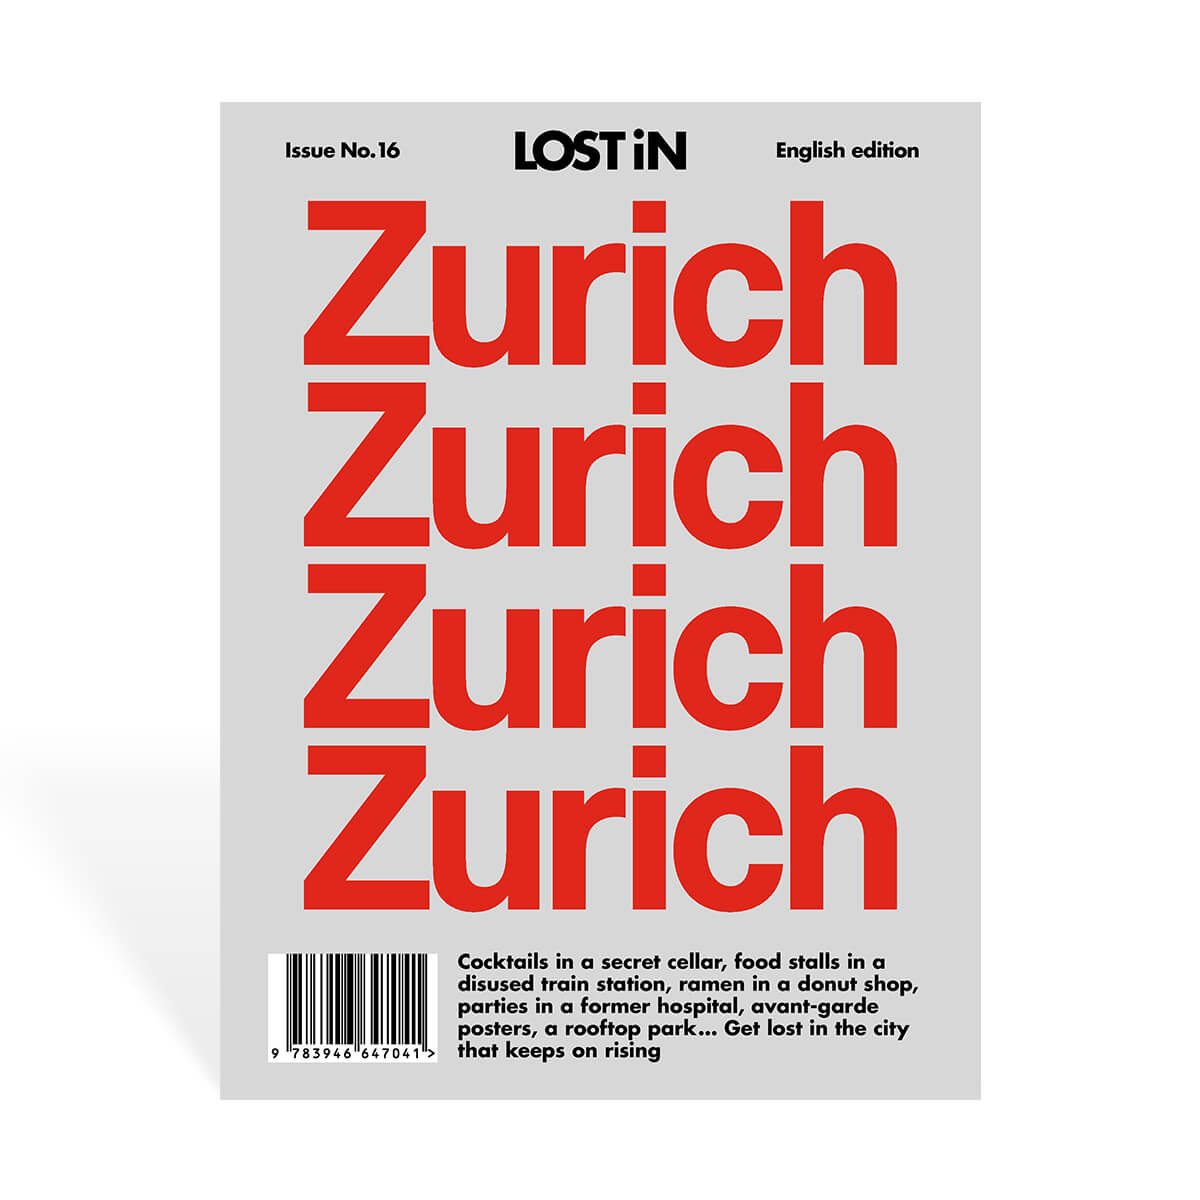 LOST iN – Zurich